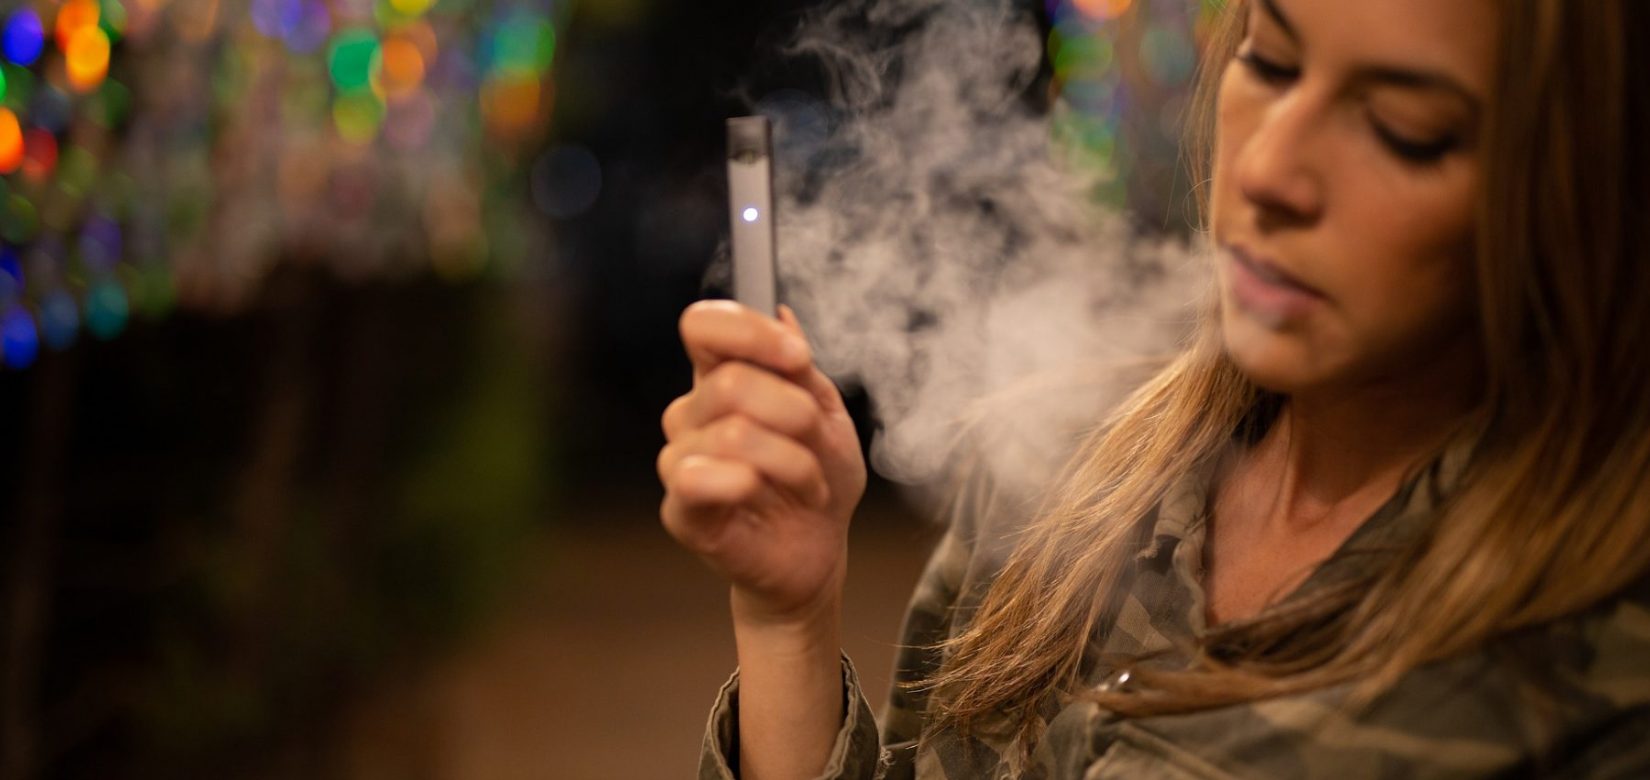 Γονείς καπνιστές - παιδιά ατμιστές! Οι έφηβοι προτιμούν το ηλεκτρονικό τσιγάρο